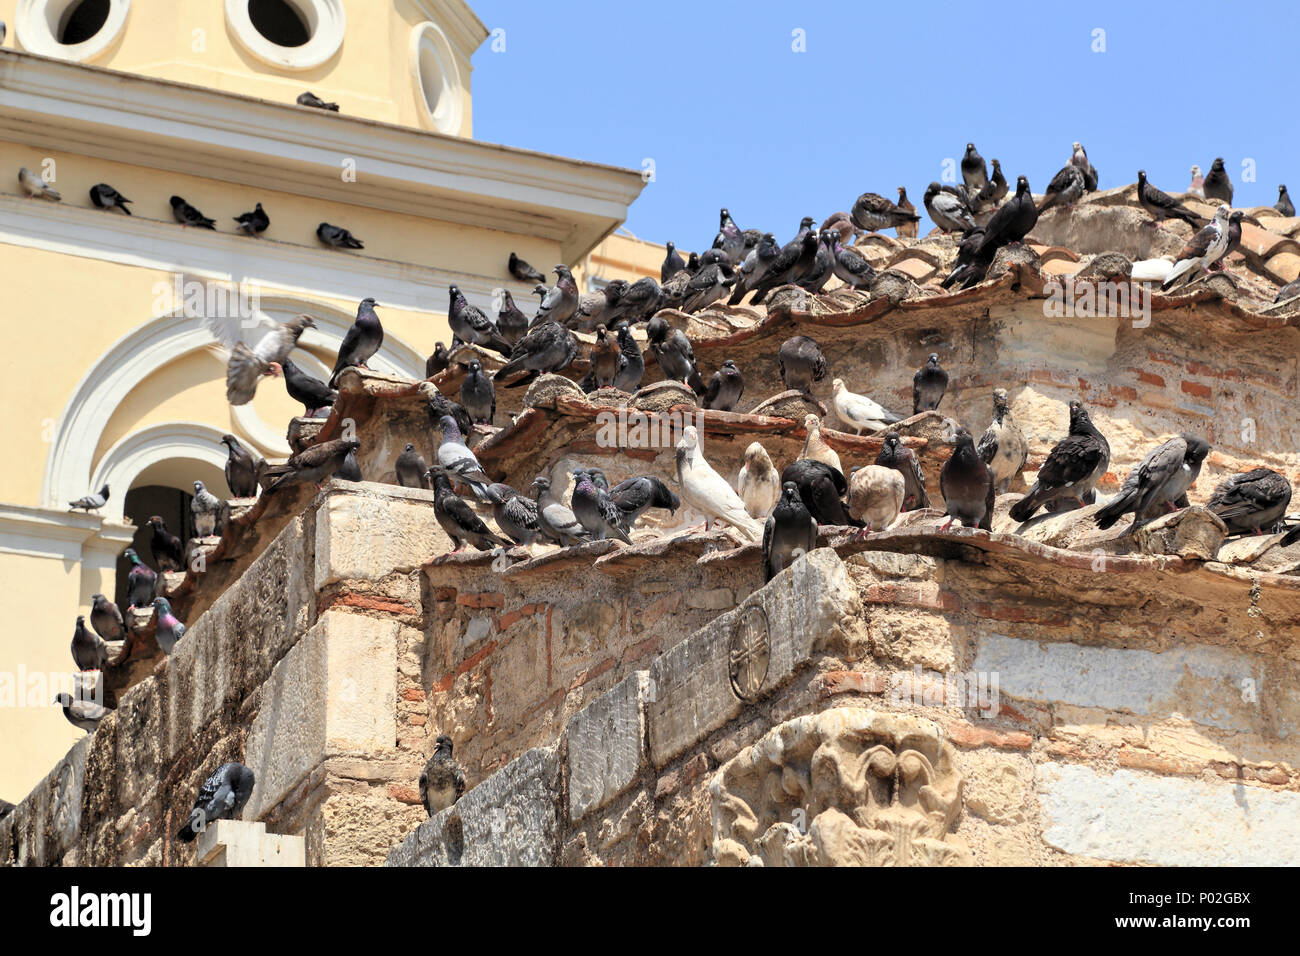 Les oiseaux urbains, pigeons sauvages (Columba livia domestica) à Athènes Banque D'Images